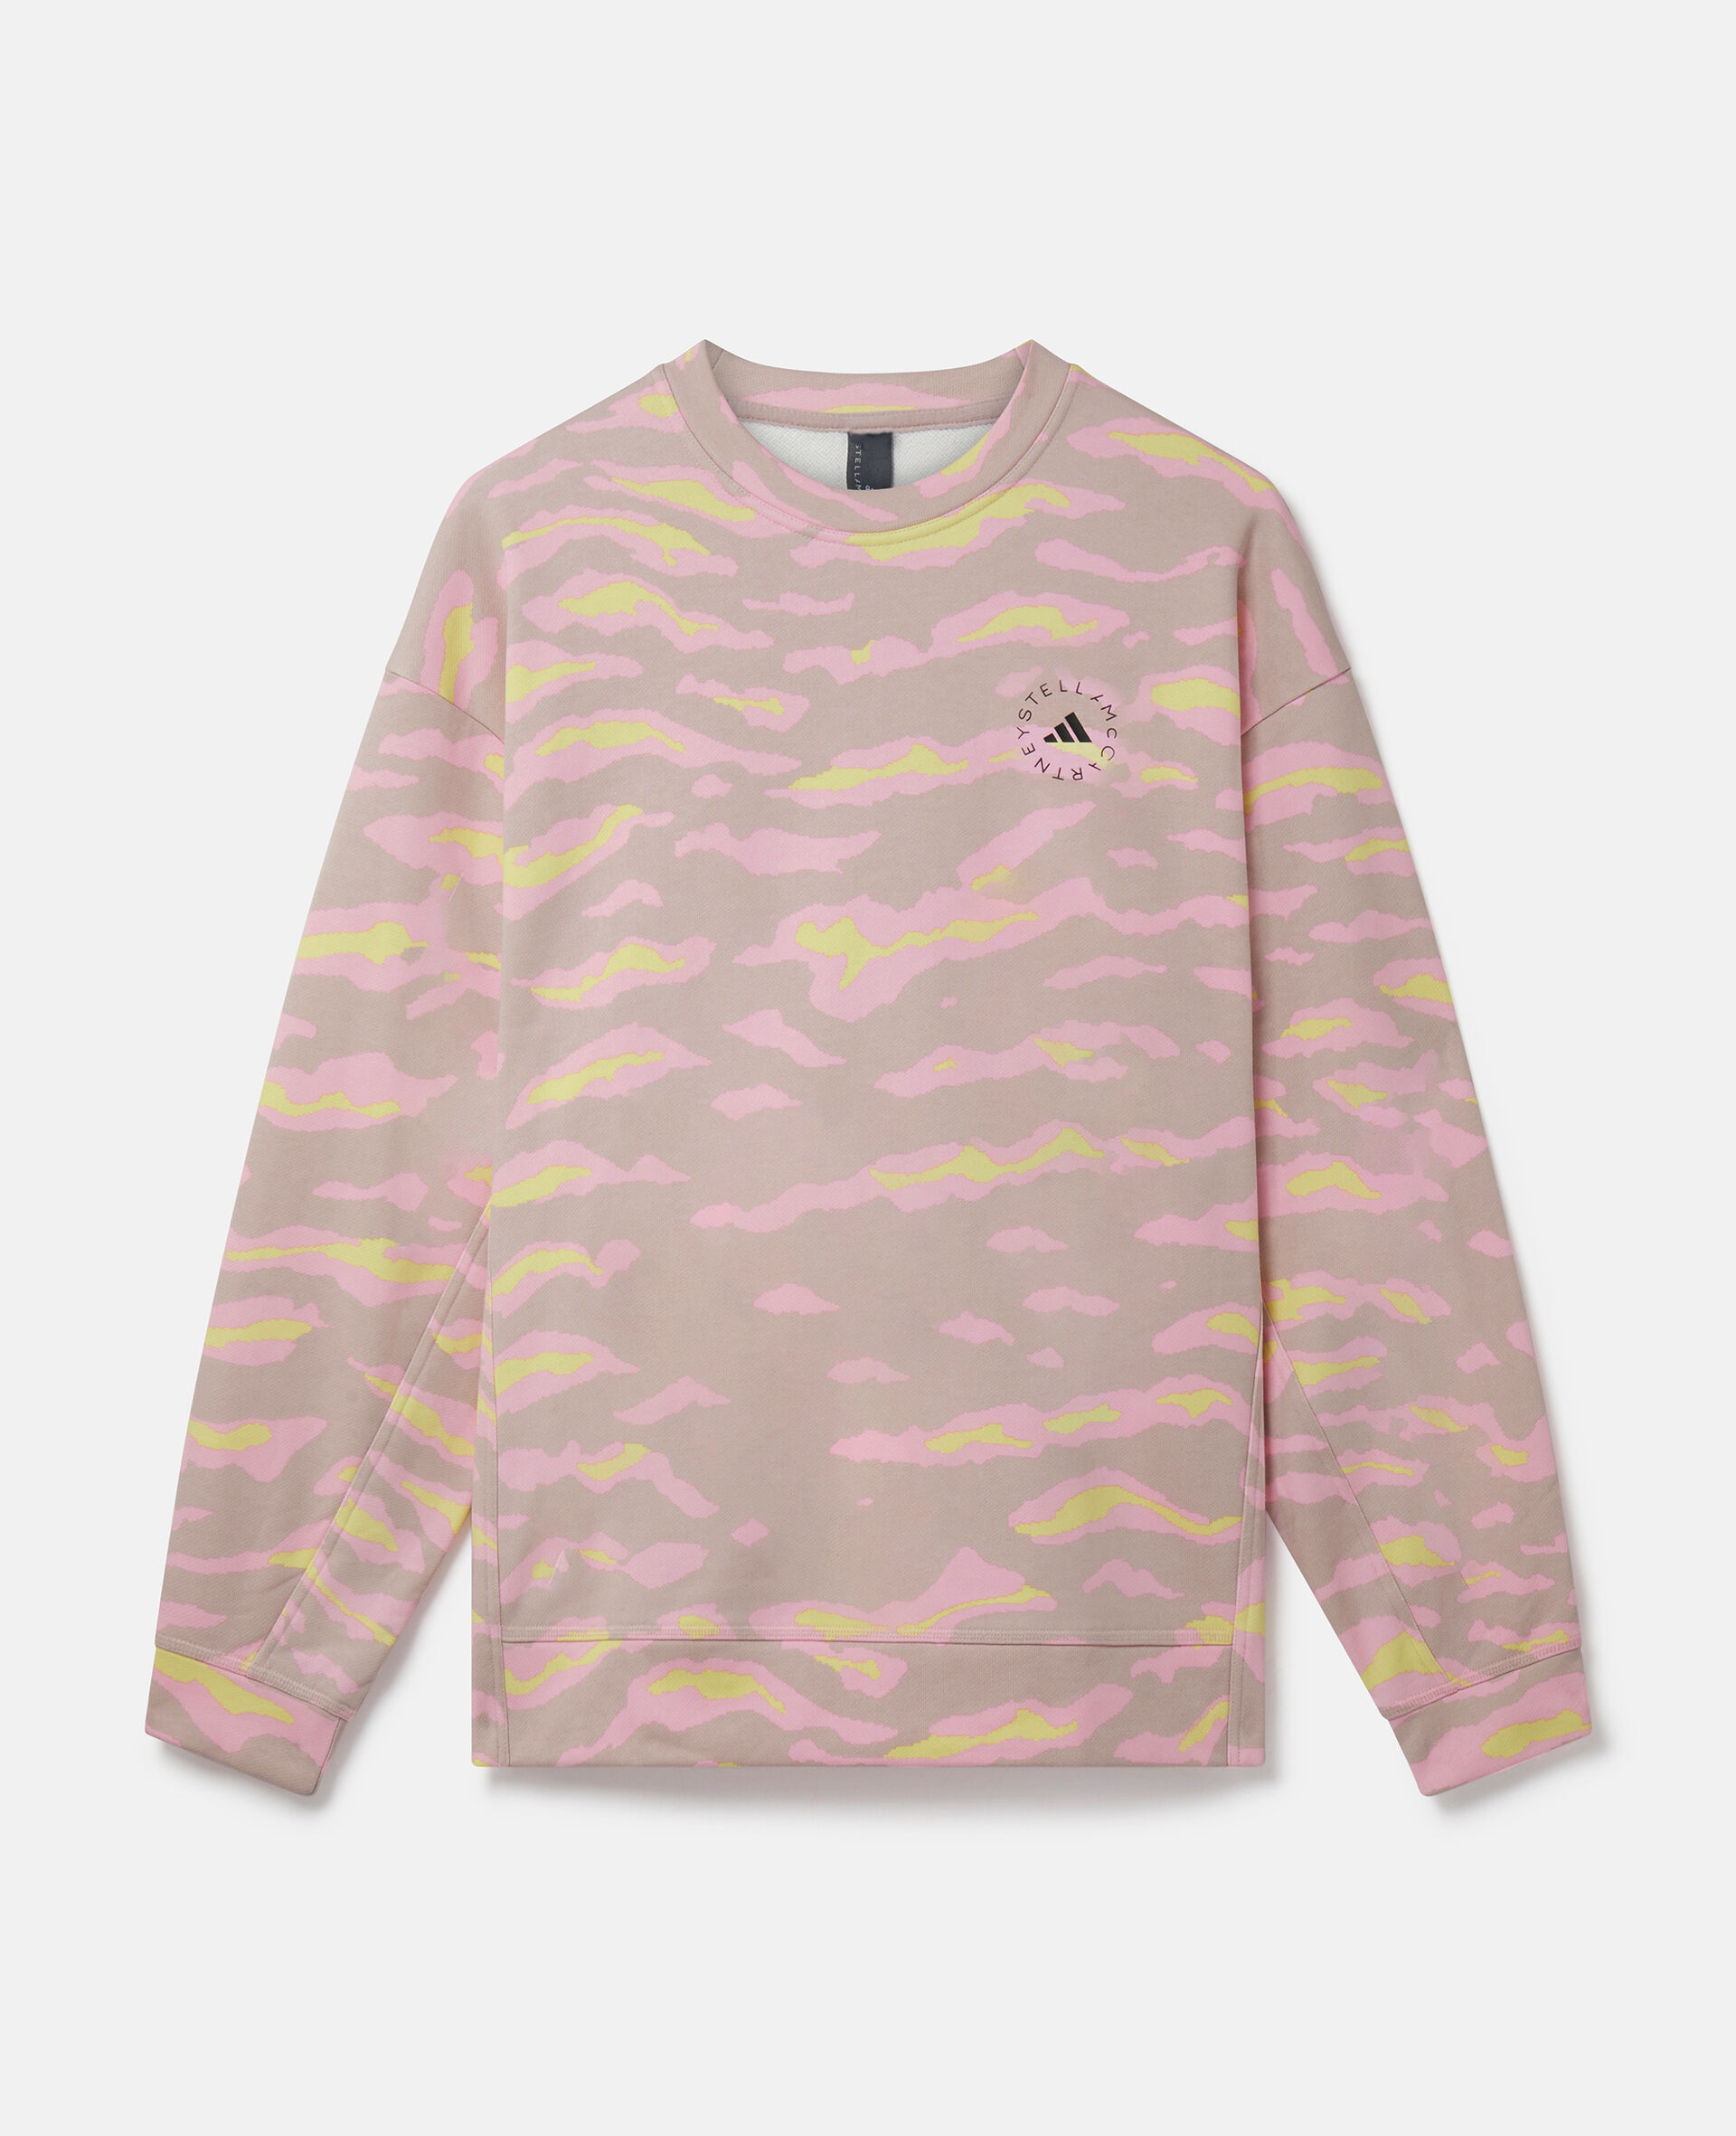 TrueCasuals Zebra Print T-Shirt-Multicoloured-medium